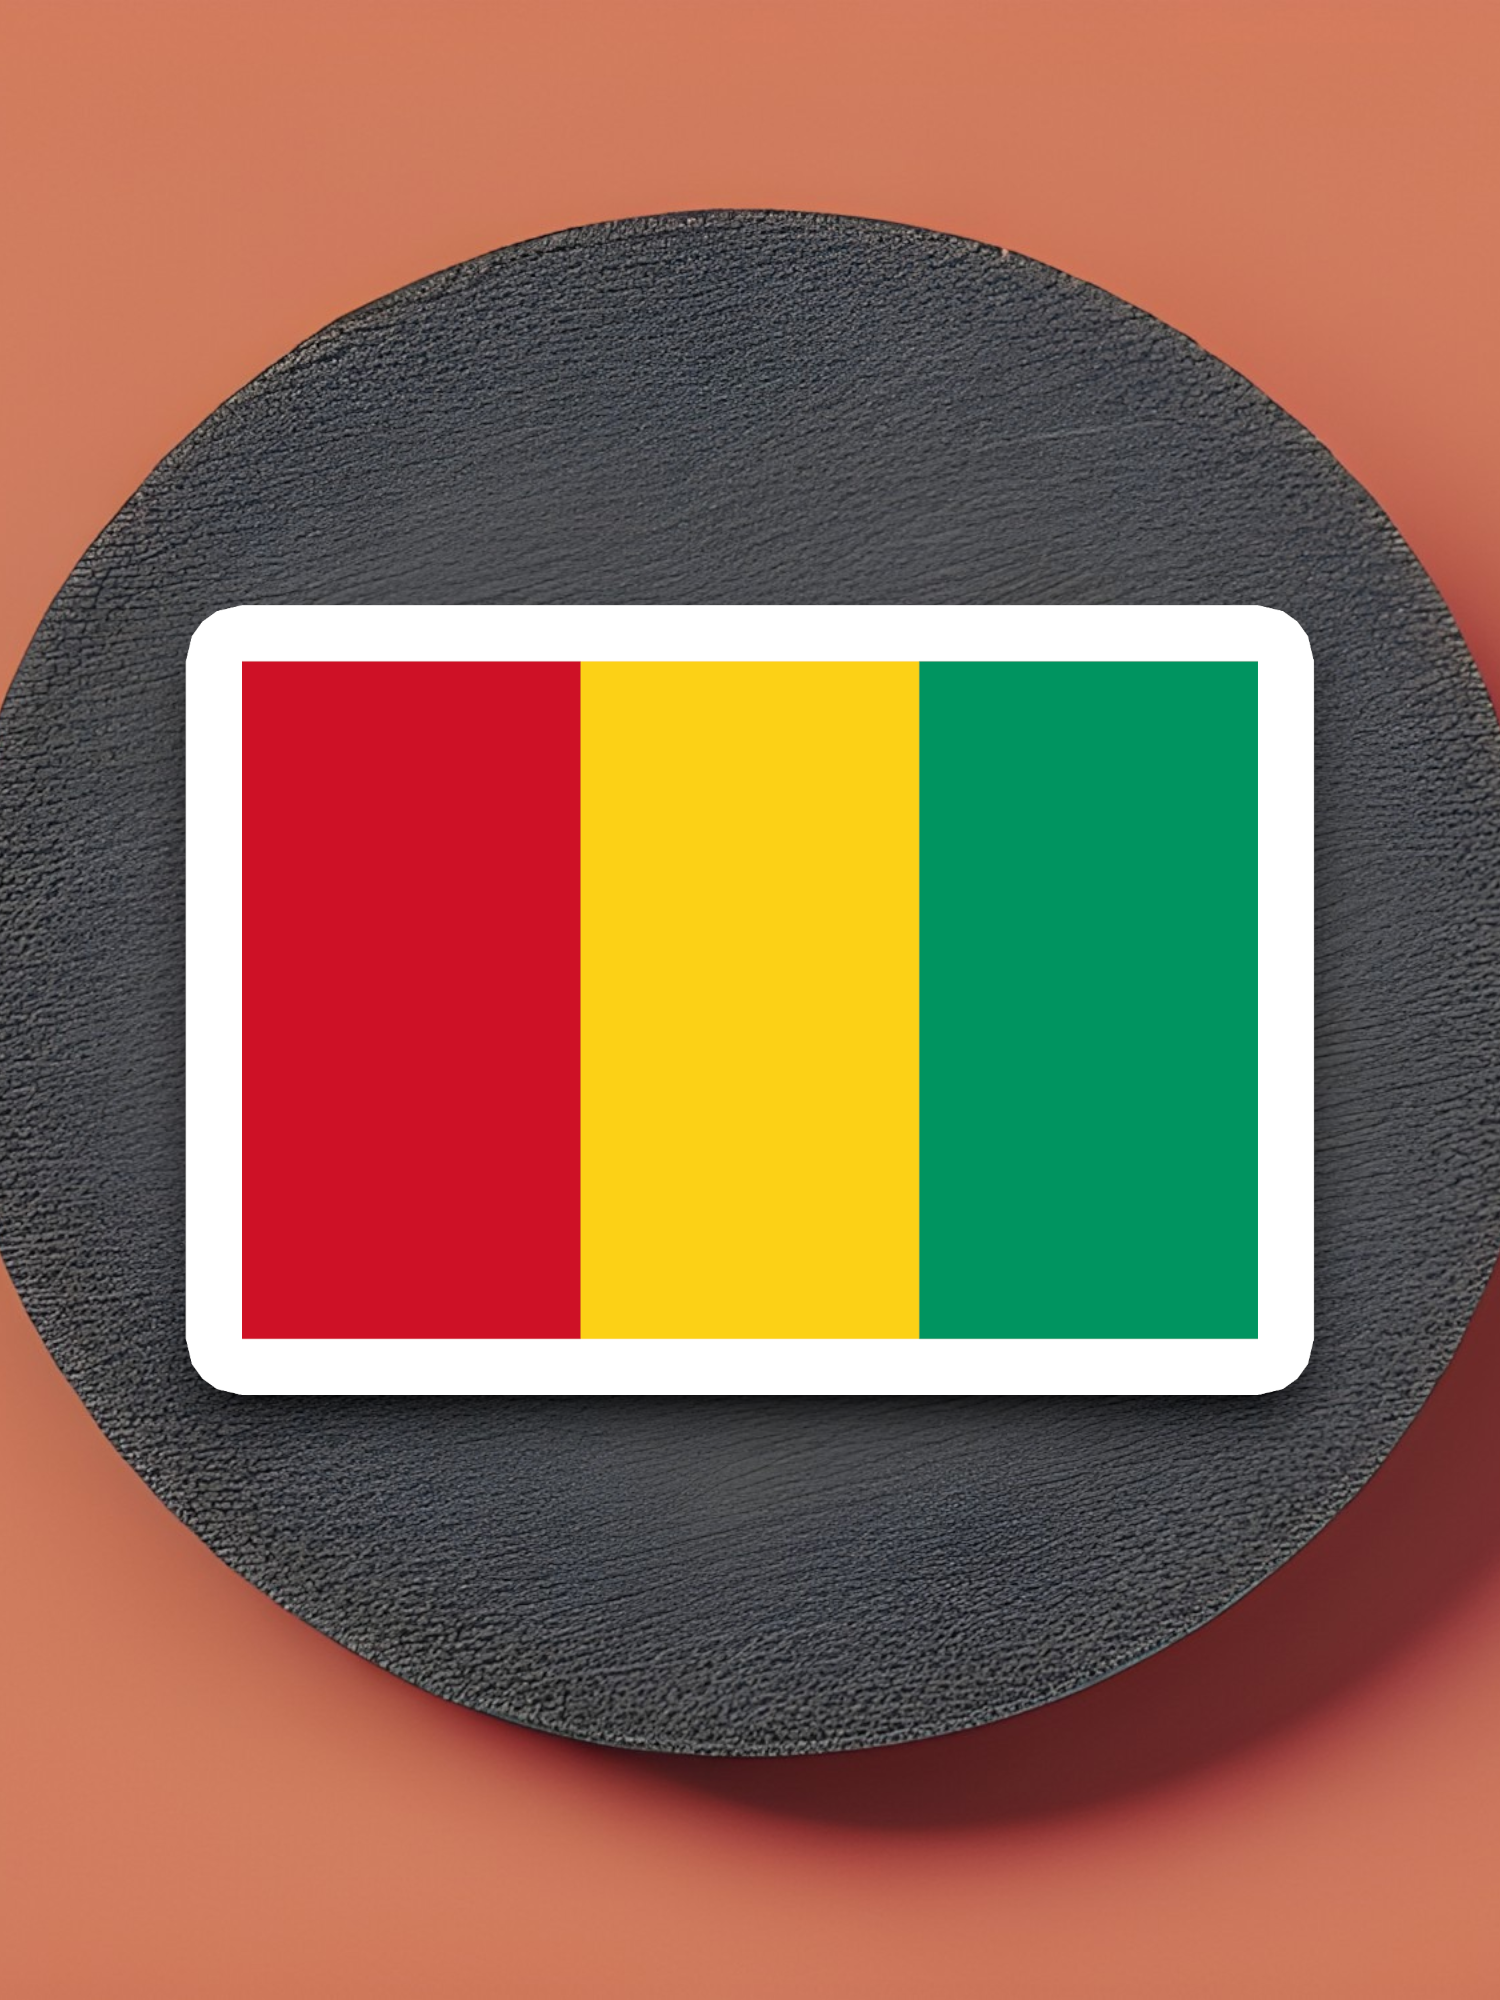 Guinea Flag - International Country Flag Sticker